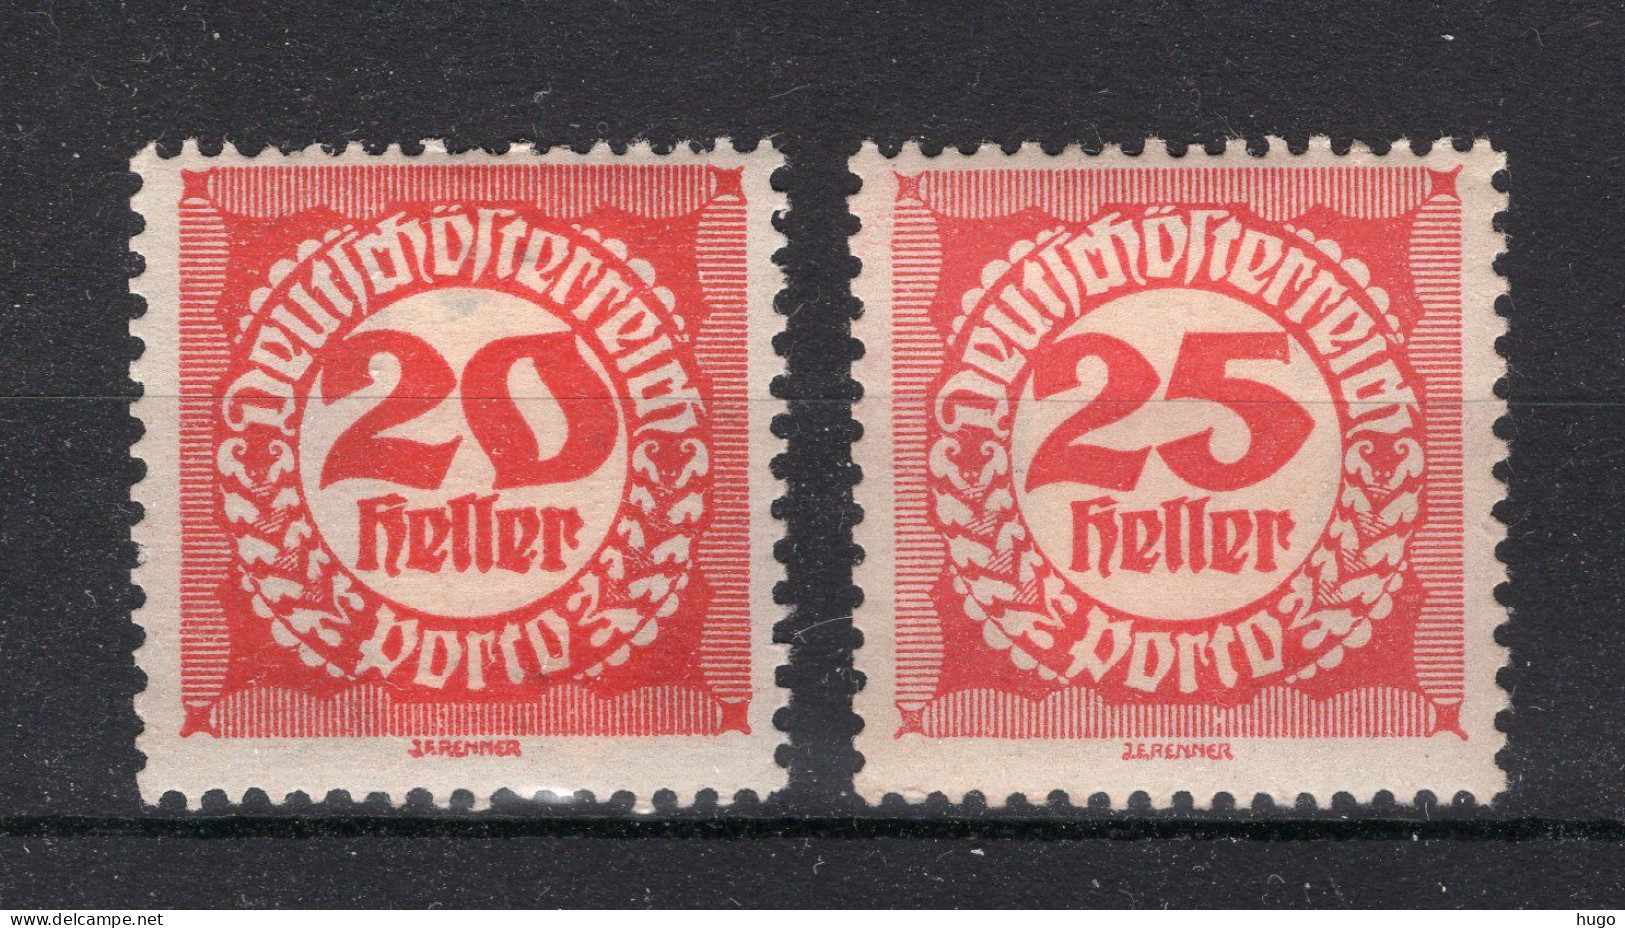 OOSTENRIJK Yt. T78/79 MH Portzegels 1919-1921 - Taxe